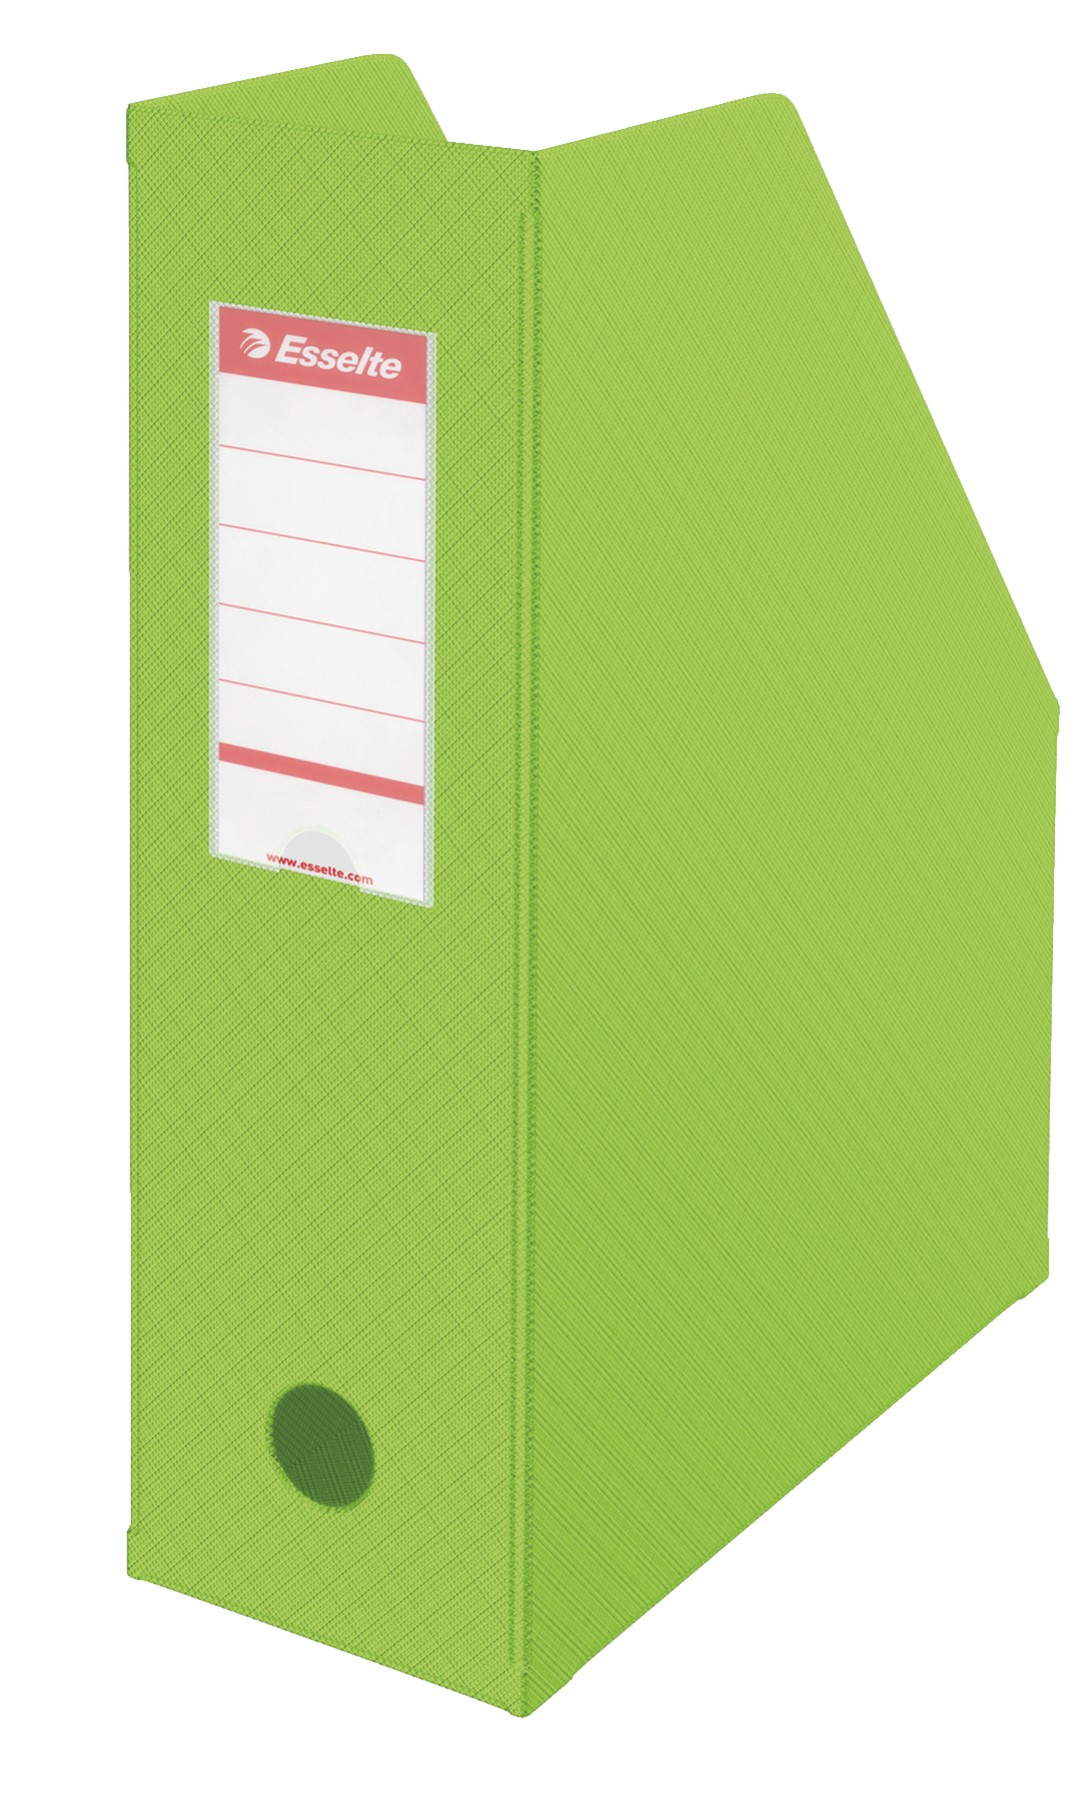 Pojemnik składany Esselte, A4, szer. grzbietu 100 mm, zielony